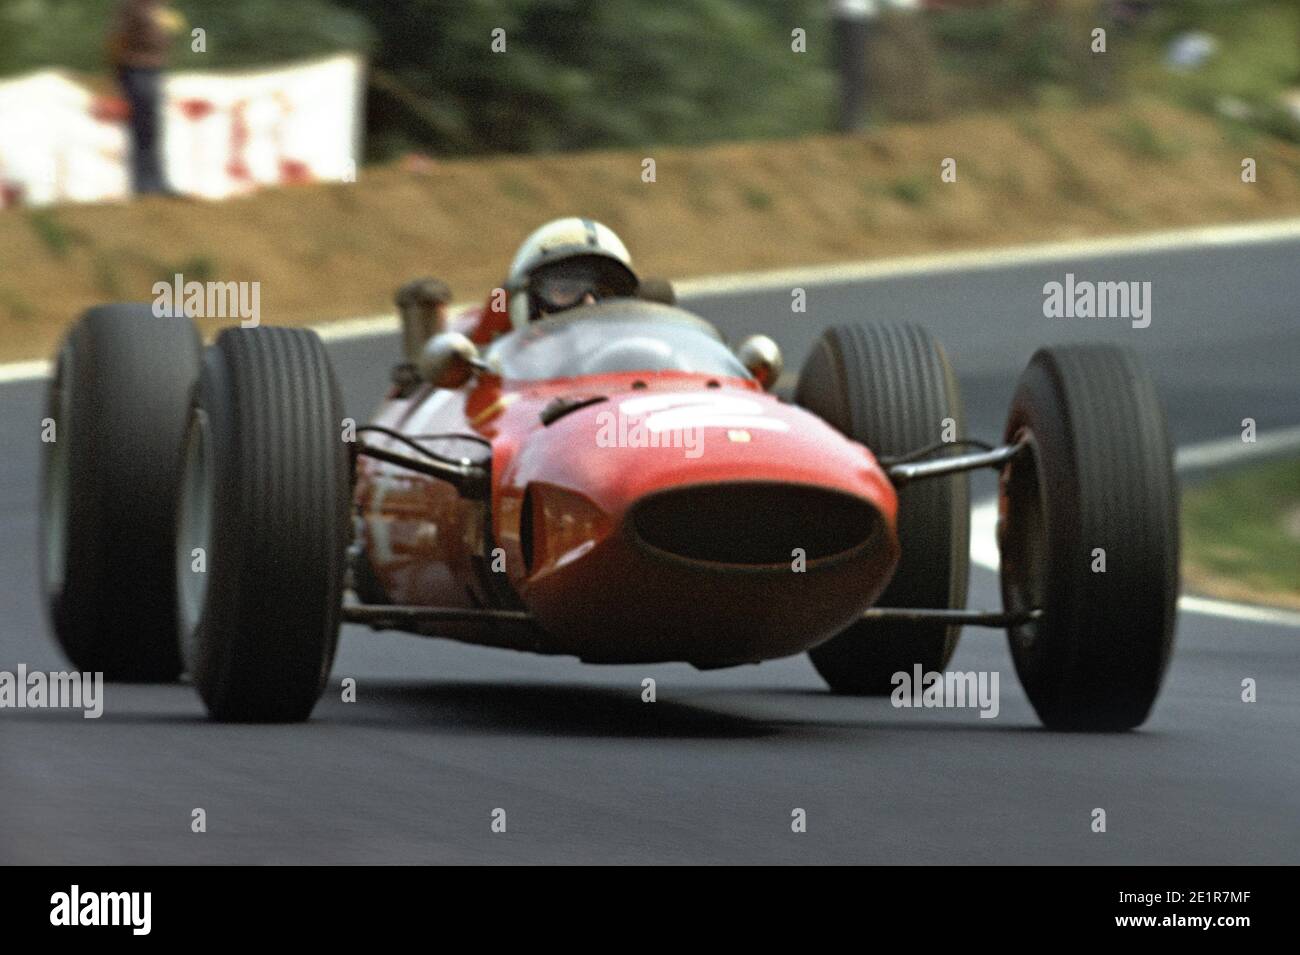 John SURTEES pilotant la Ferrari F1 à pleine vitesse pendant le Grand Prix de France 1965, dans le circuit de Charade près de Clermont-Ferrand. Banque D'Images